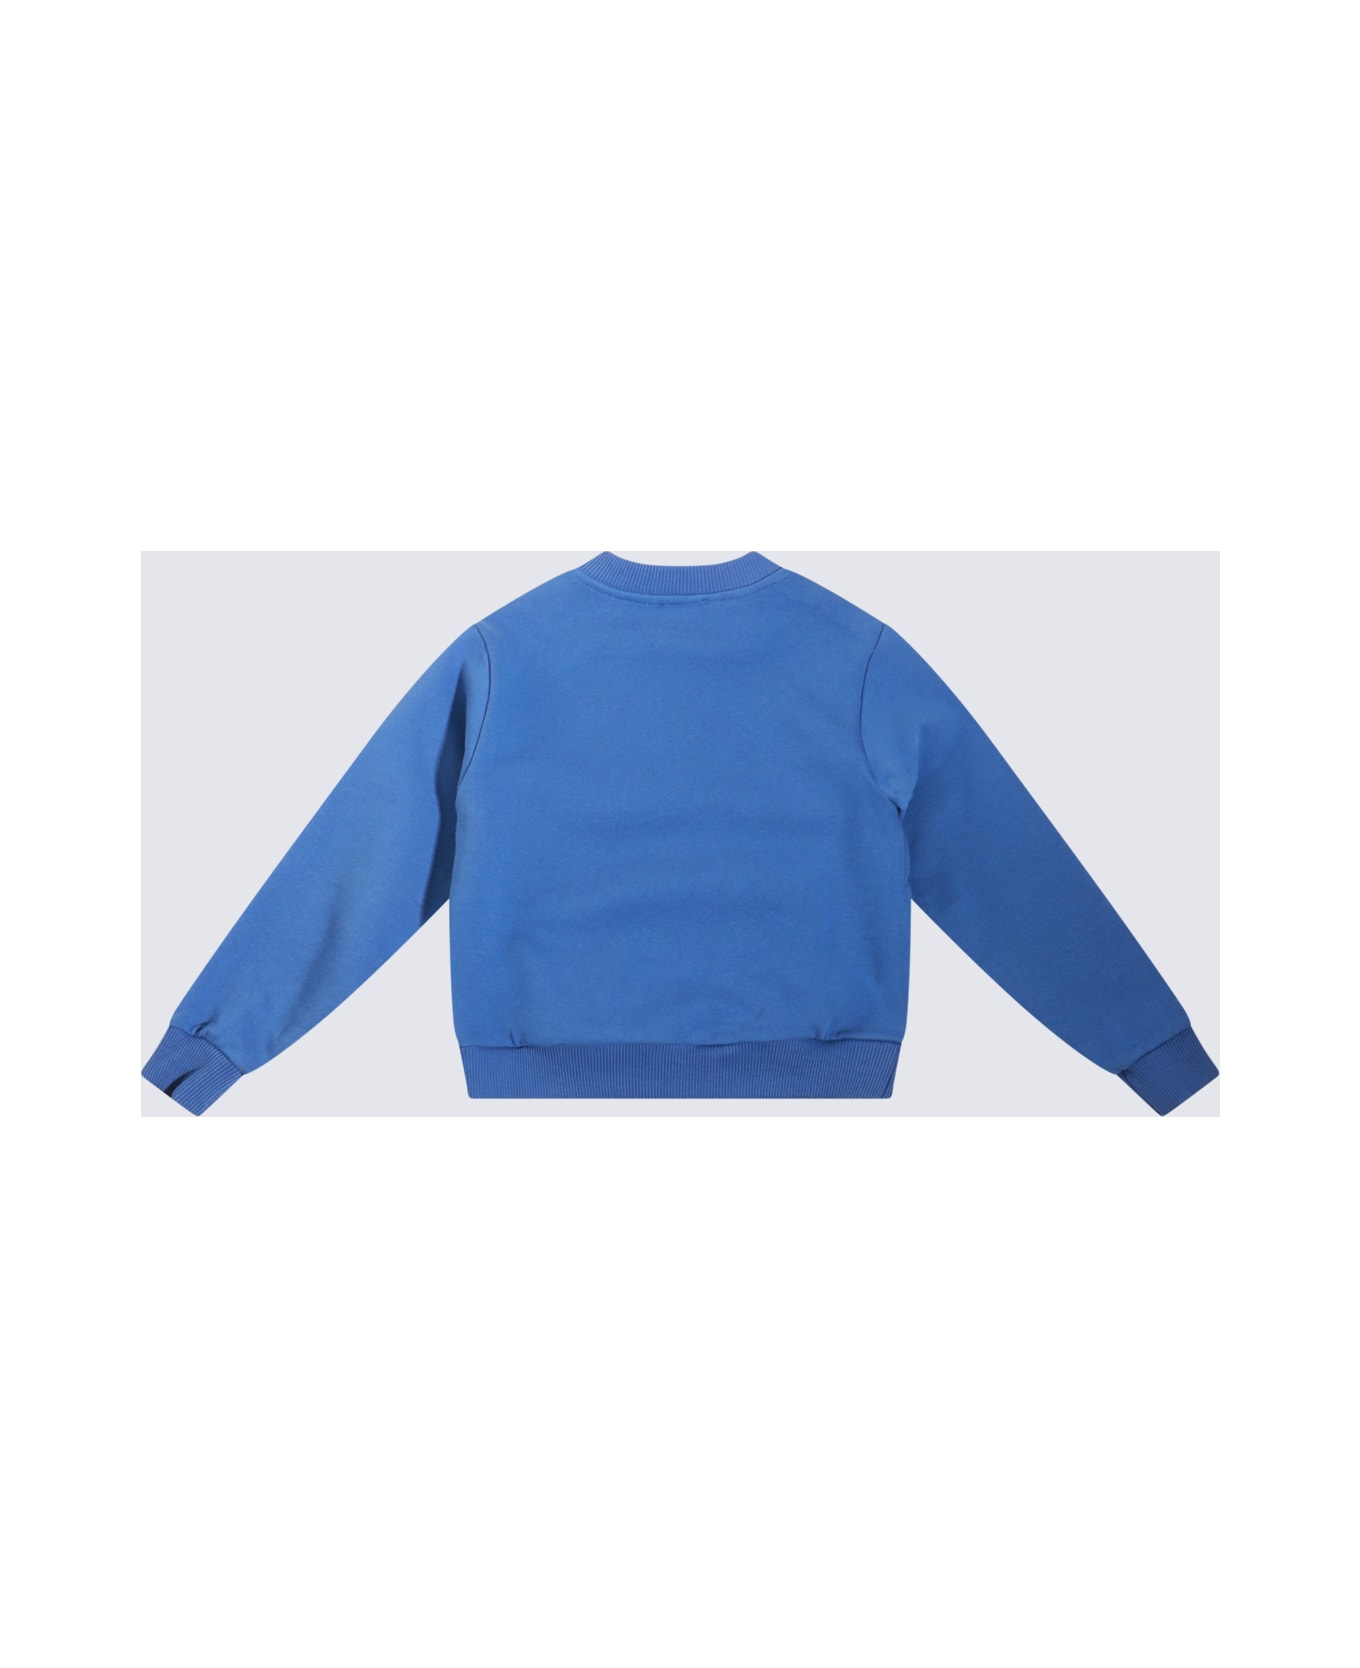 Dolce & Gabbana Blue Cotton Sweatshirt - BLUETTE MEDIO